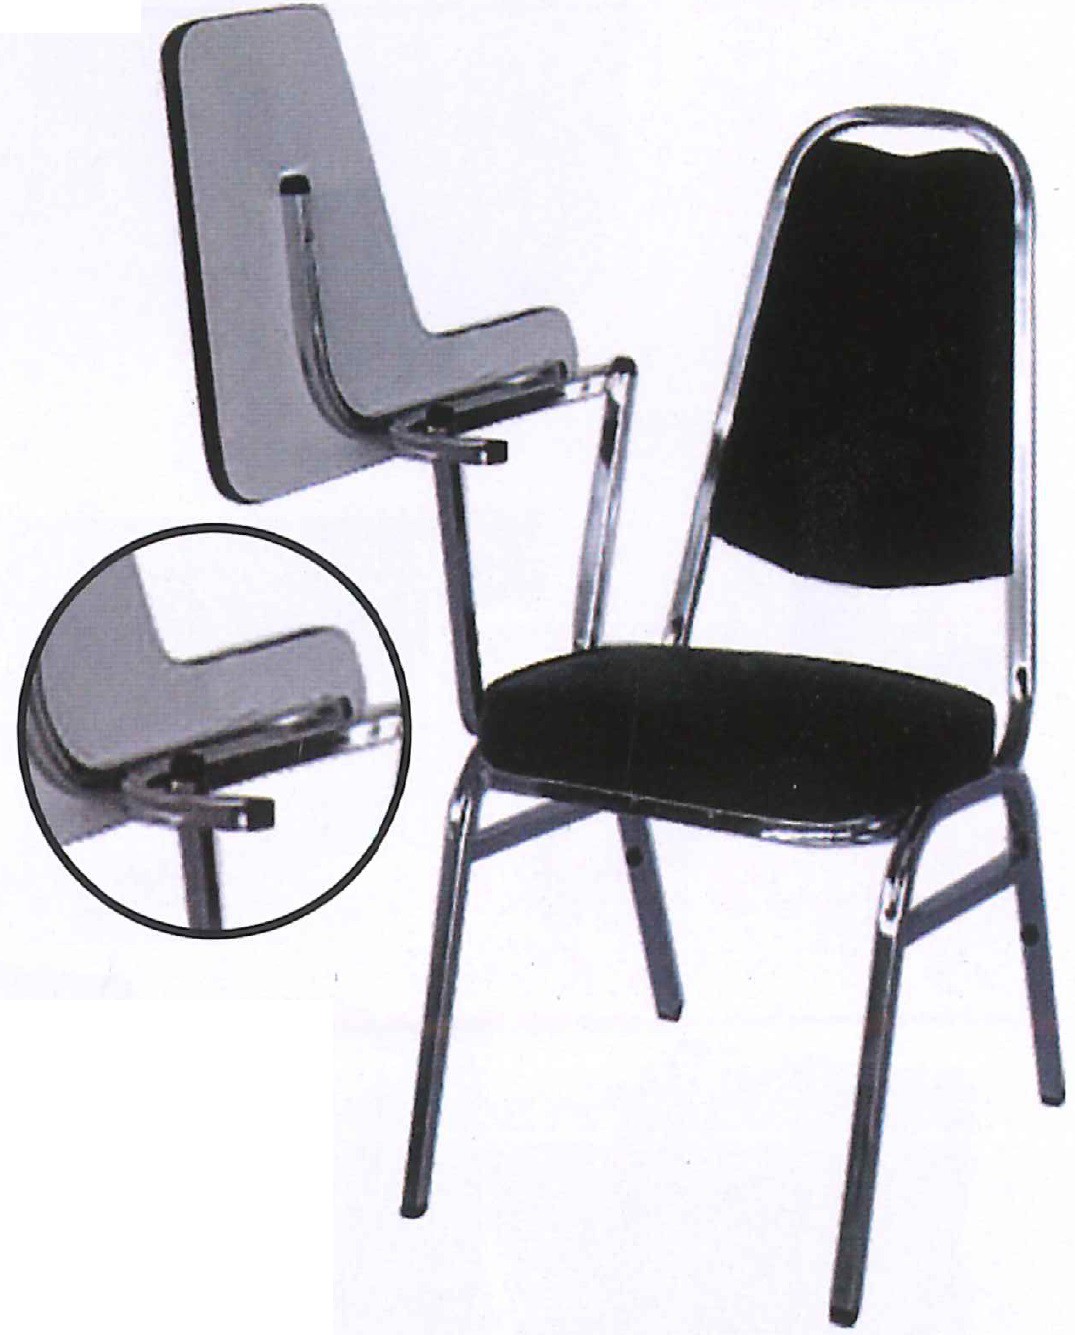 DG/DG1ALC,เก้าอี้เลคเชอร์,เก้าอี้งาน,เก้าอี้ห้องประชุม,เก้าอี้สัมมนา,เก้าอี้,chair